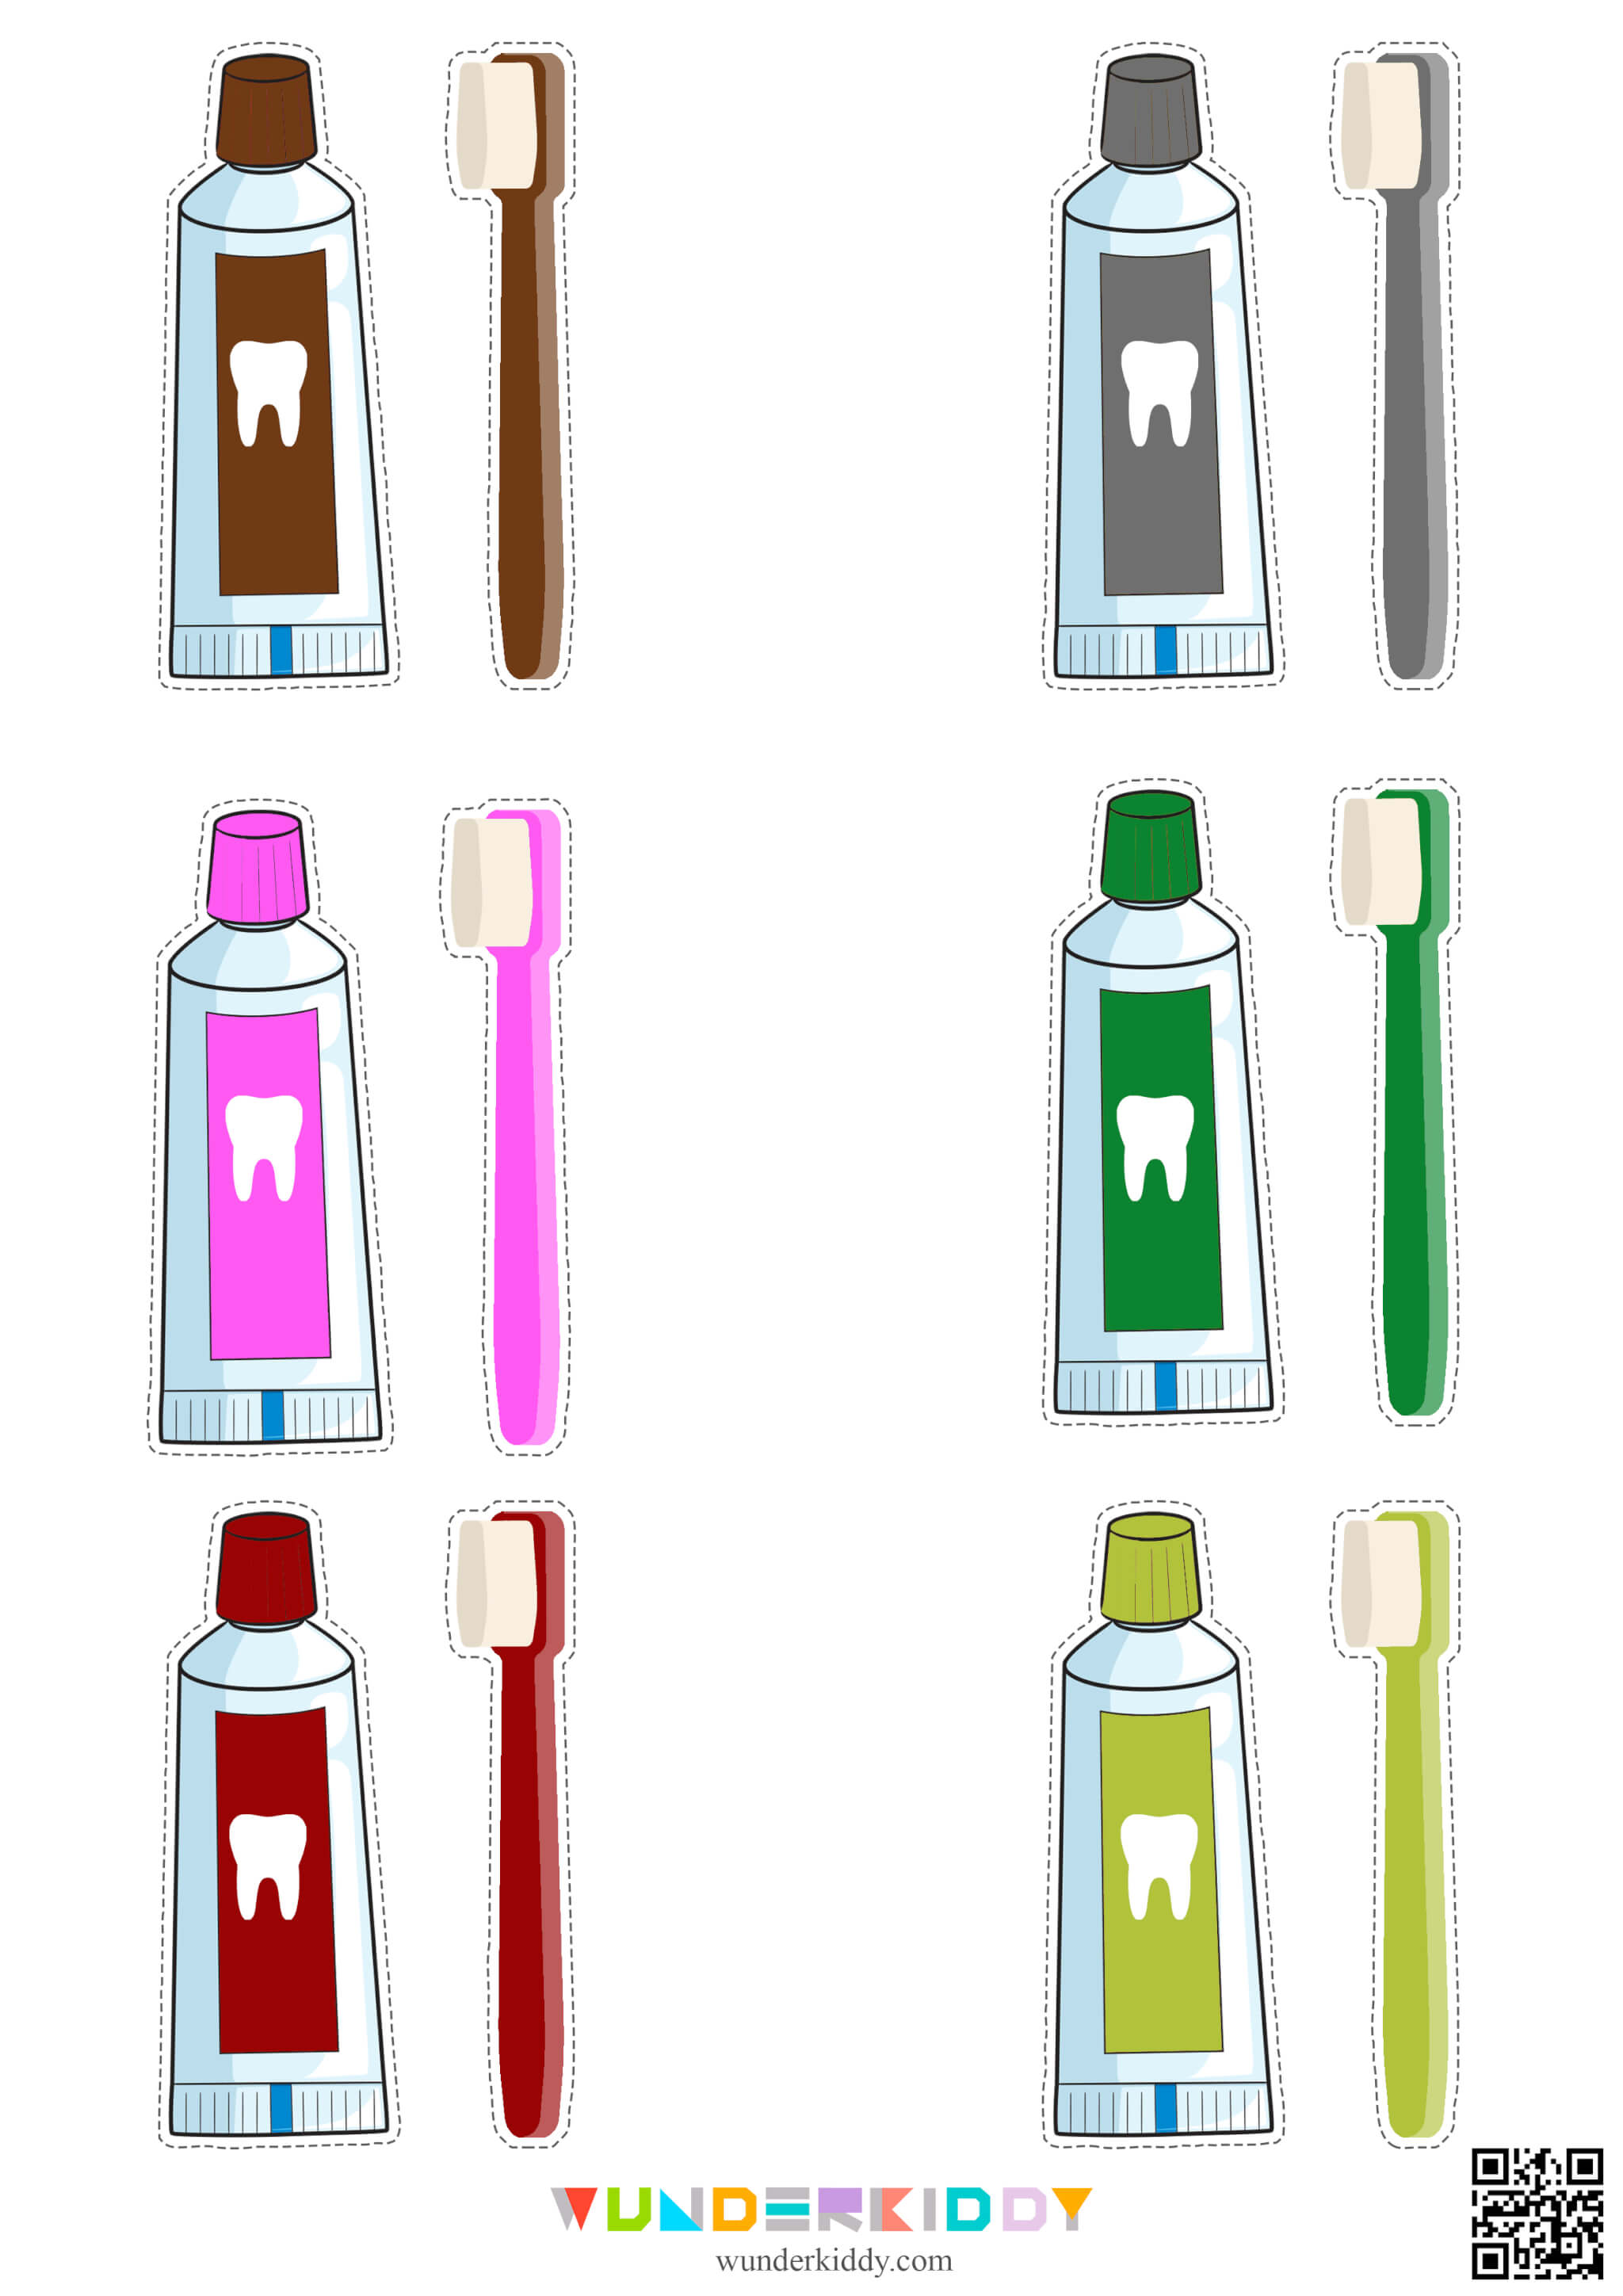 Dental Health Color Match Game - Image 5